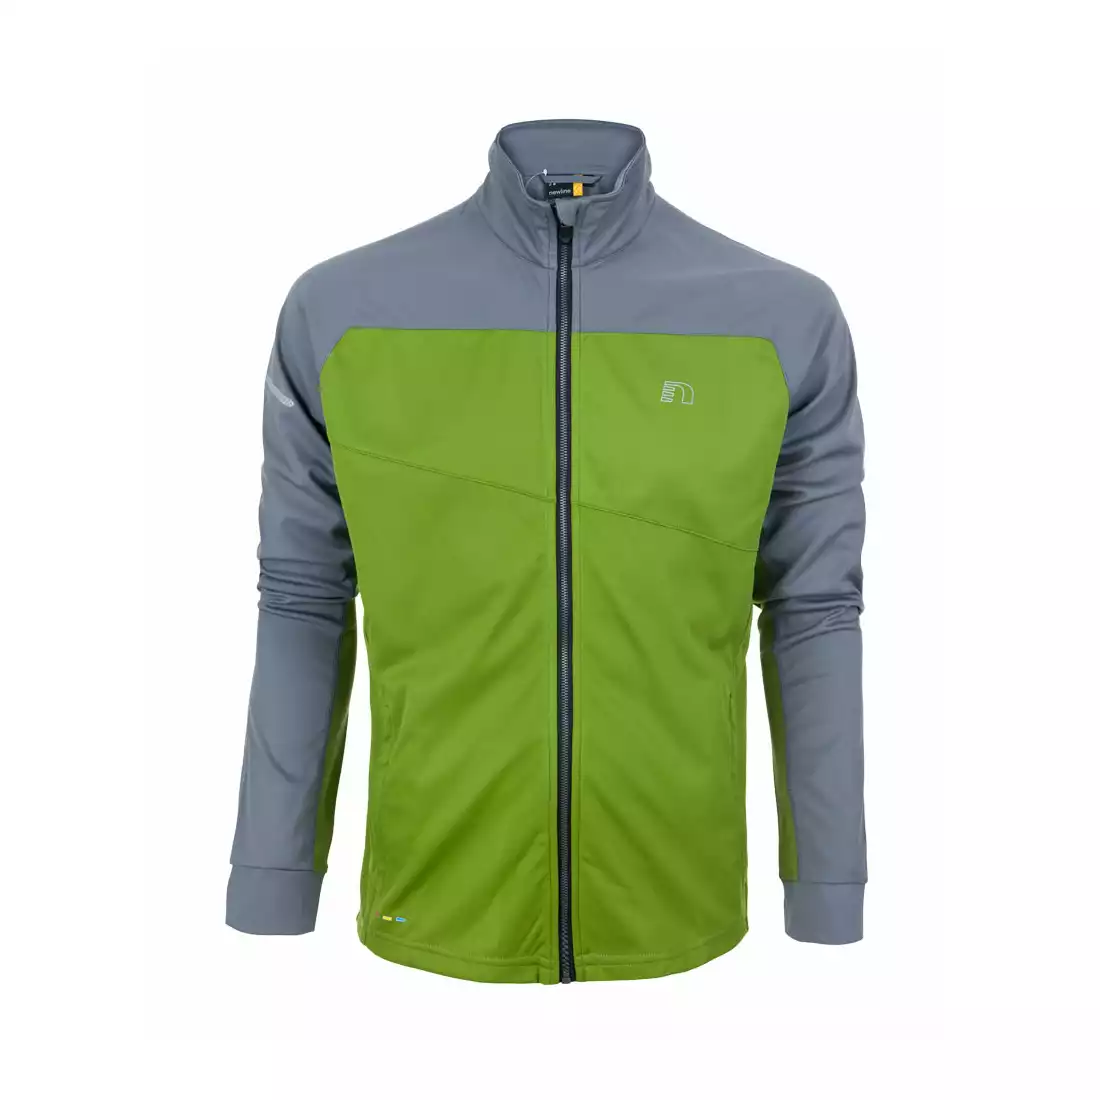 NEWLINE - męska bluza termoaktywna BASE WARM-UP ZIP - 14310-018, kolor: zielono-szary